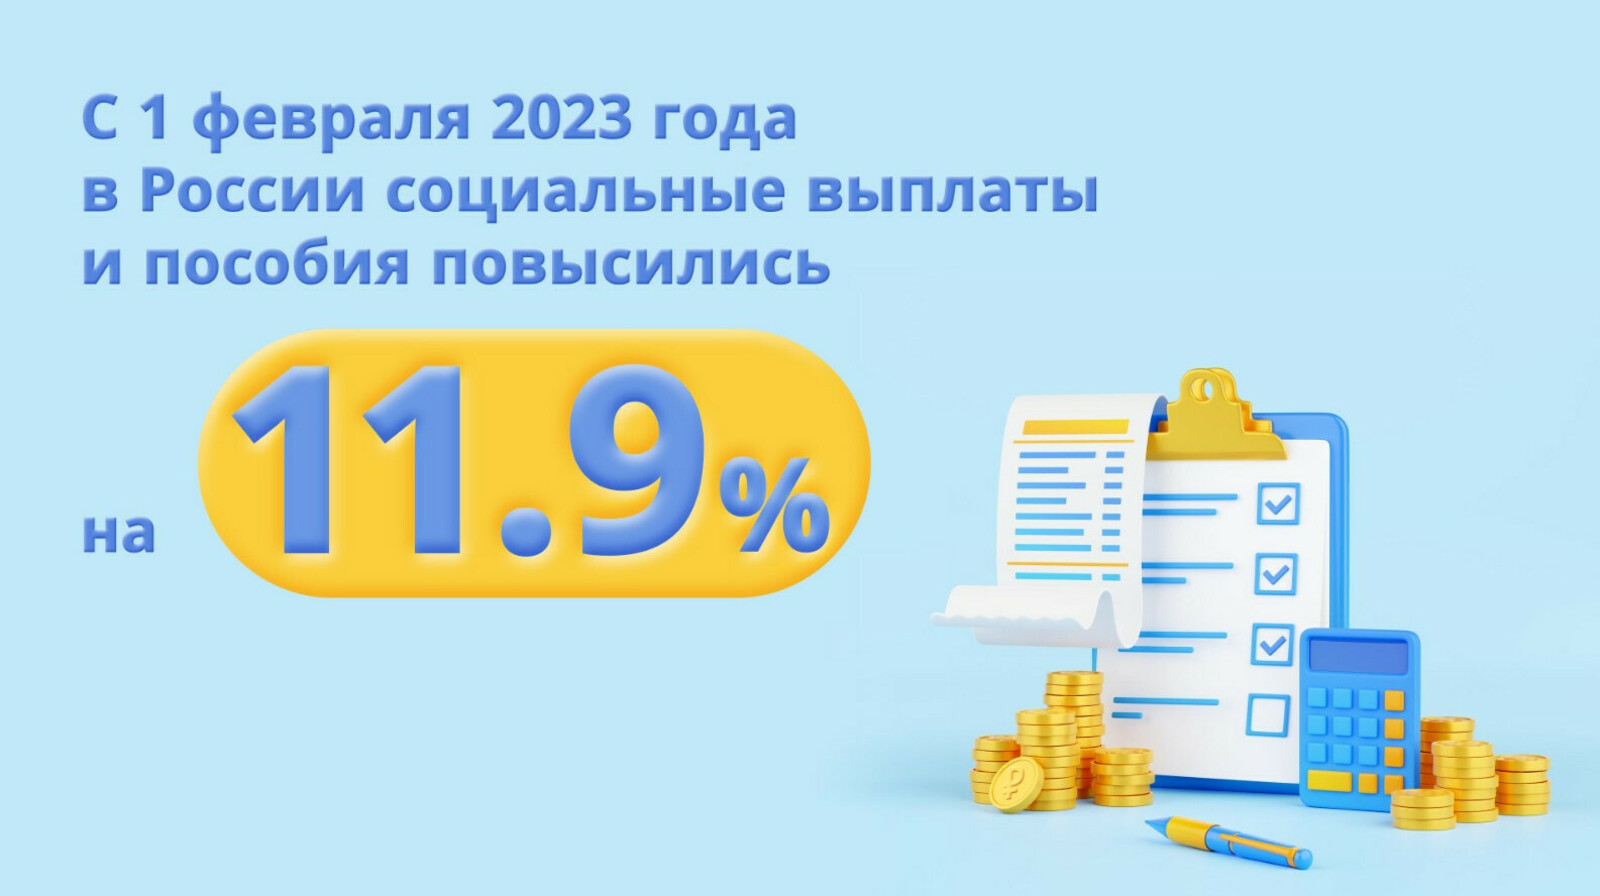 Пособия и выплаты в России выросли на 11,9 %